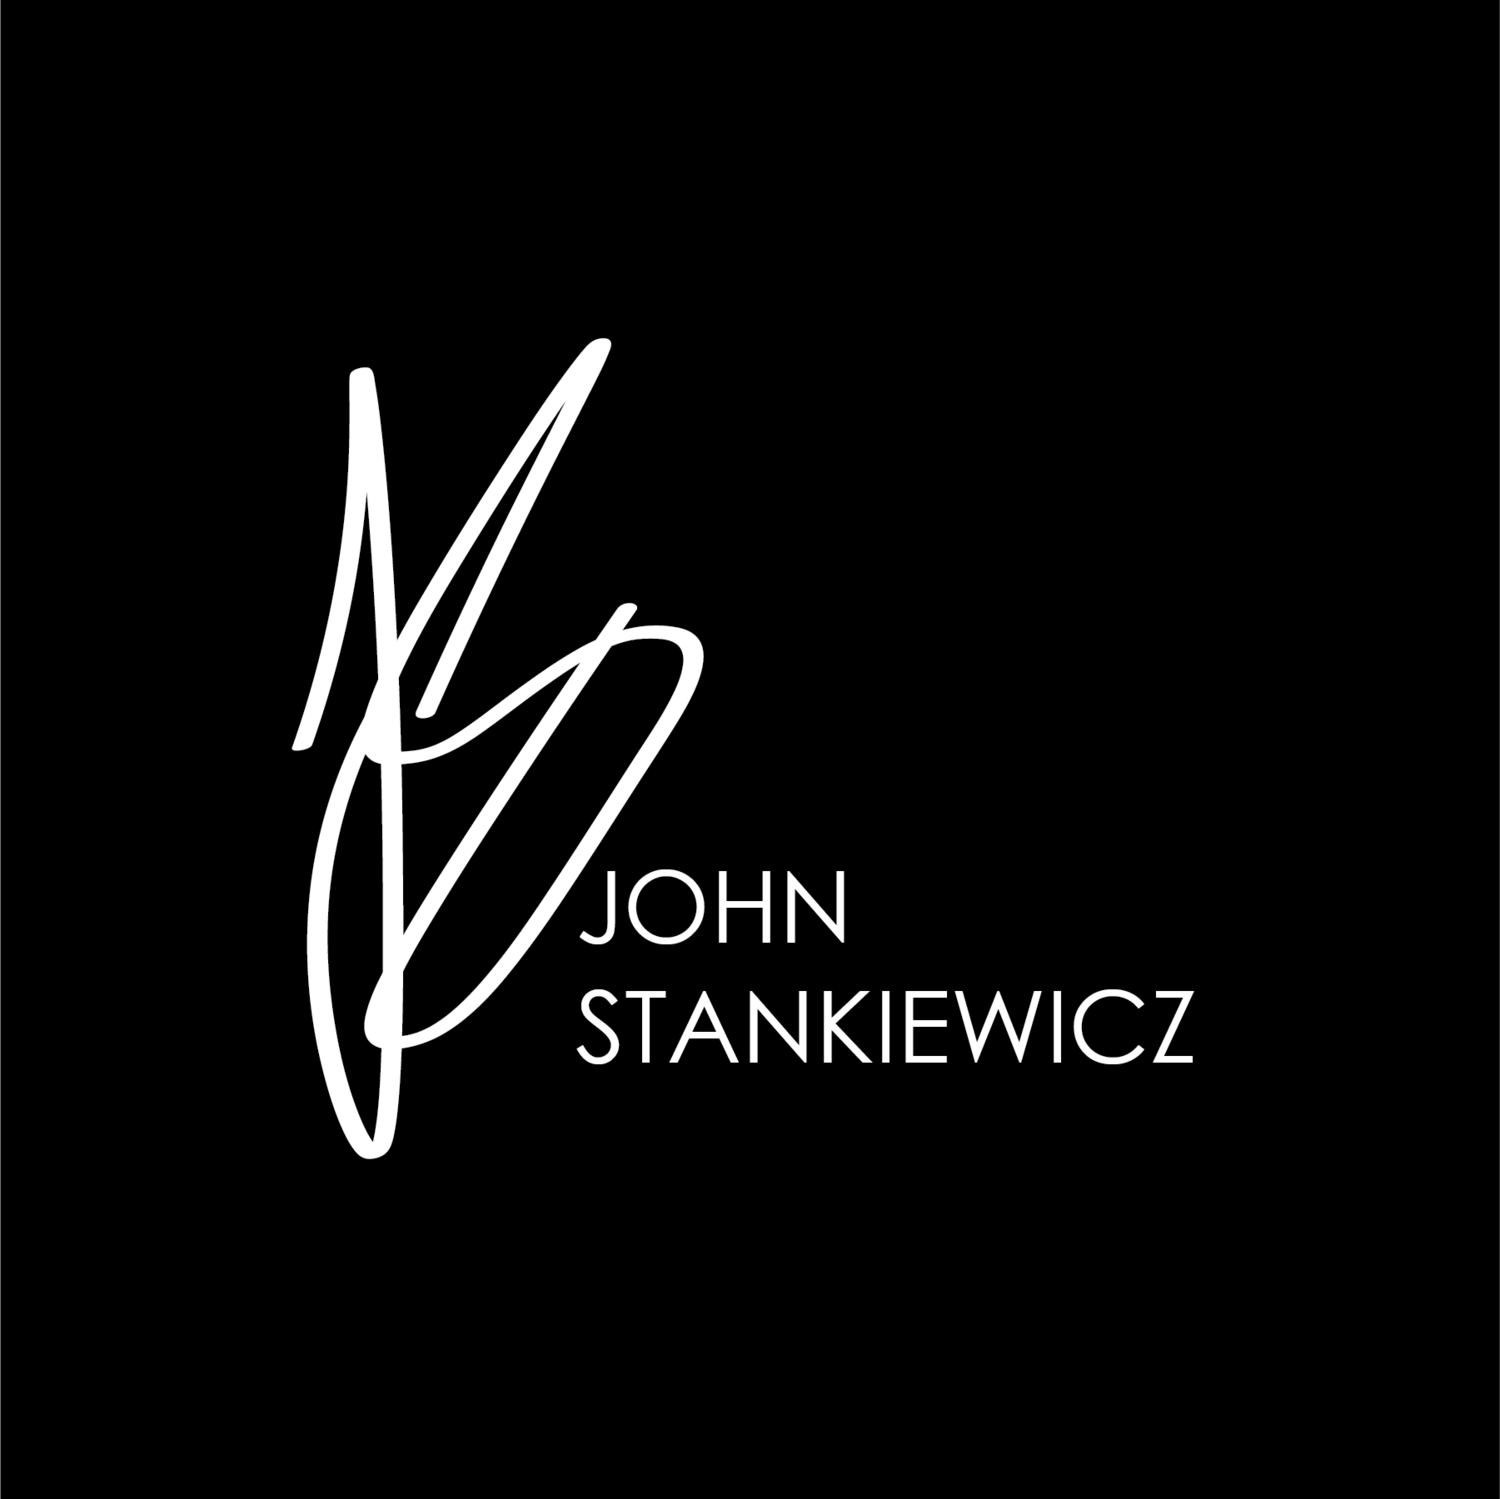 John Stankiewicz